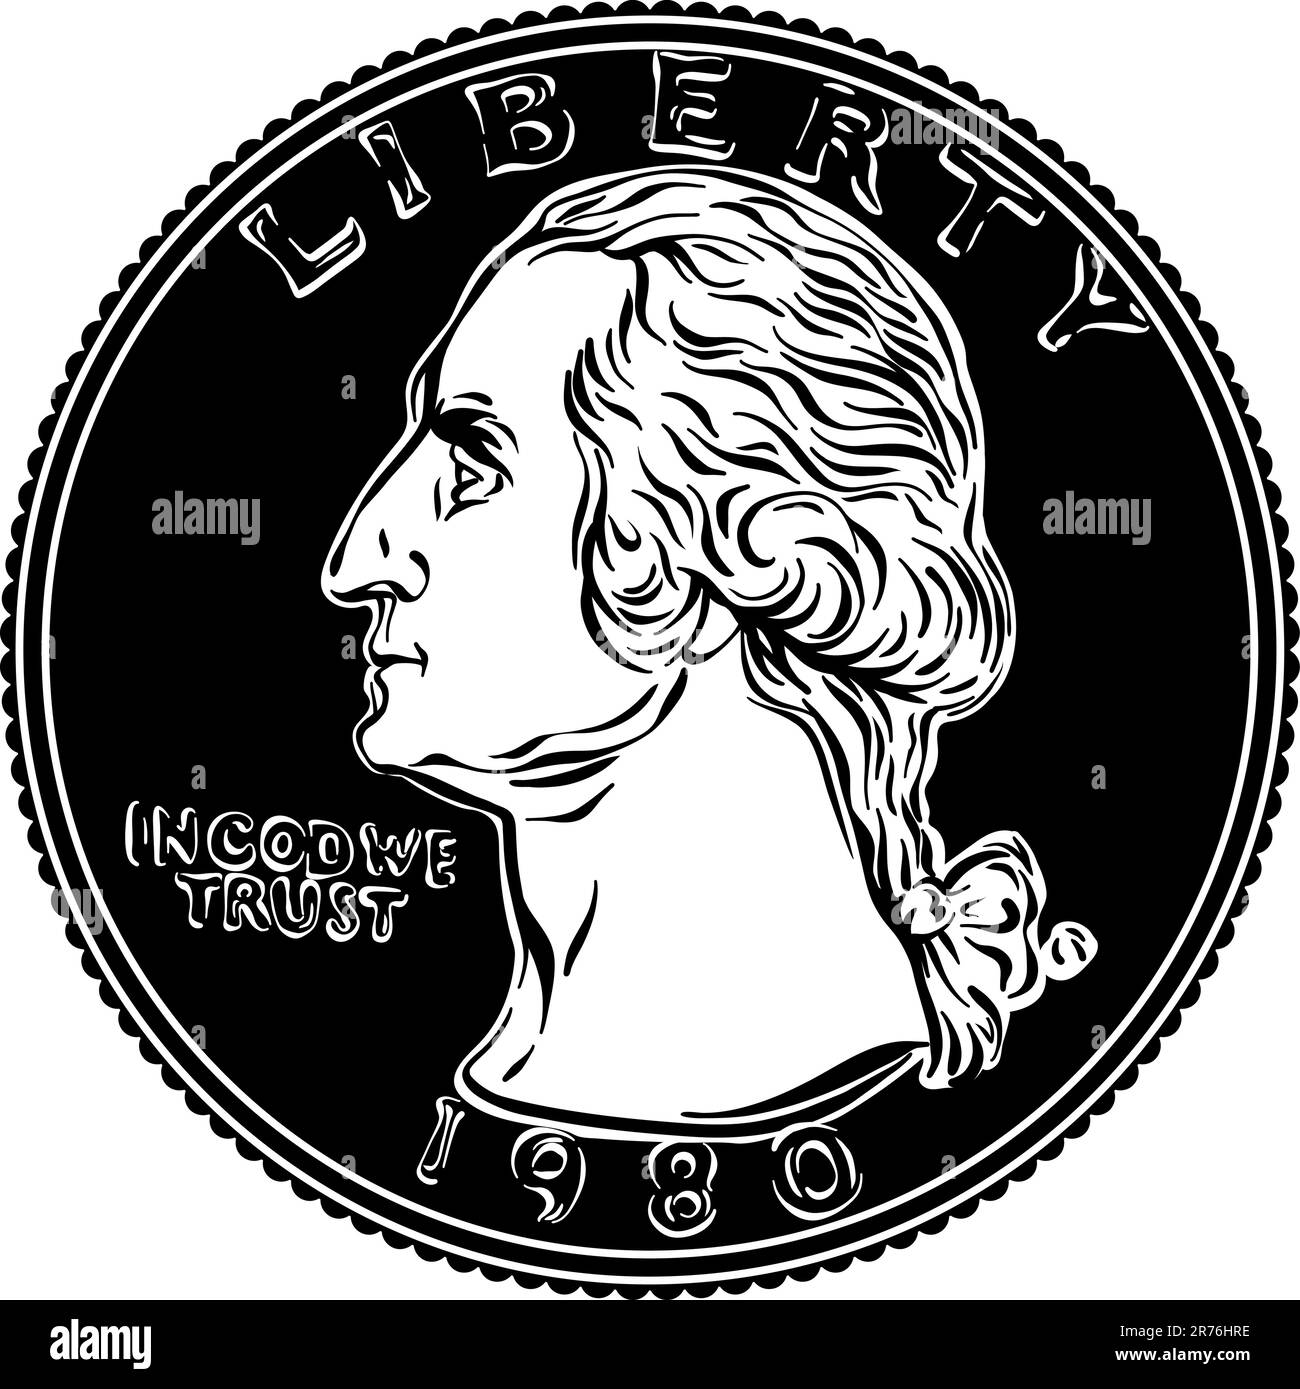 American Money, États-Unis Washington quart de dollar ou 25 cents or coin, premier président des États-Unis Washington sur l'inverse. Image en noir et blanc Illustration de Vecteur